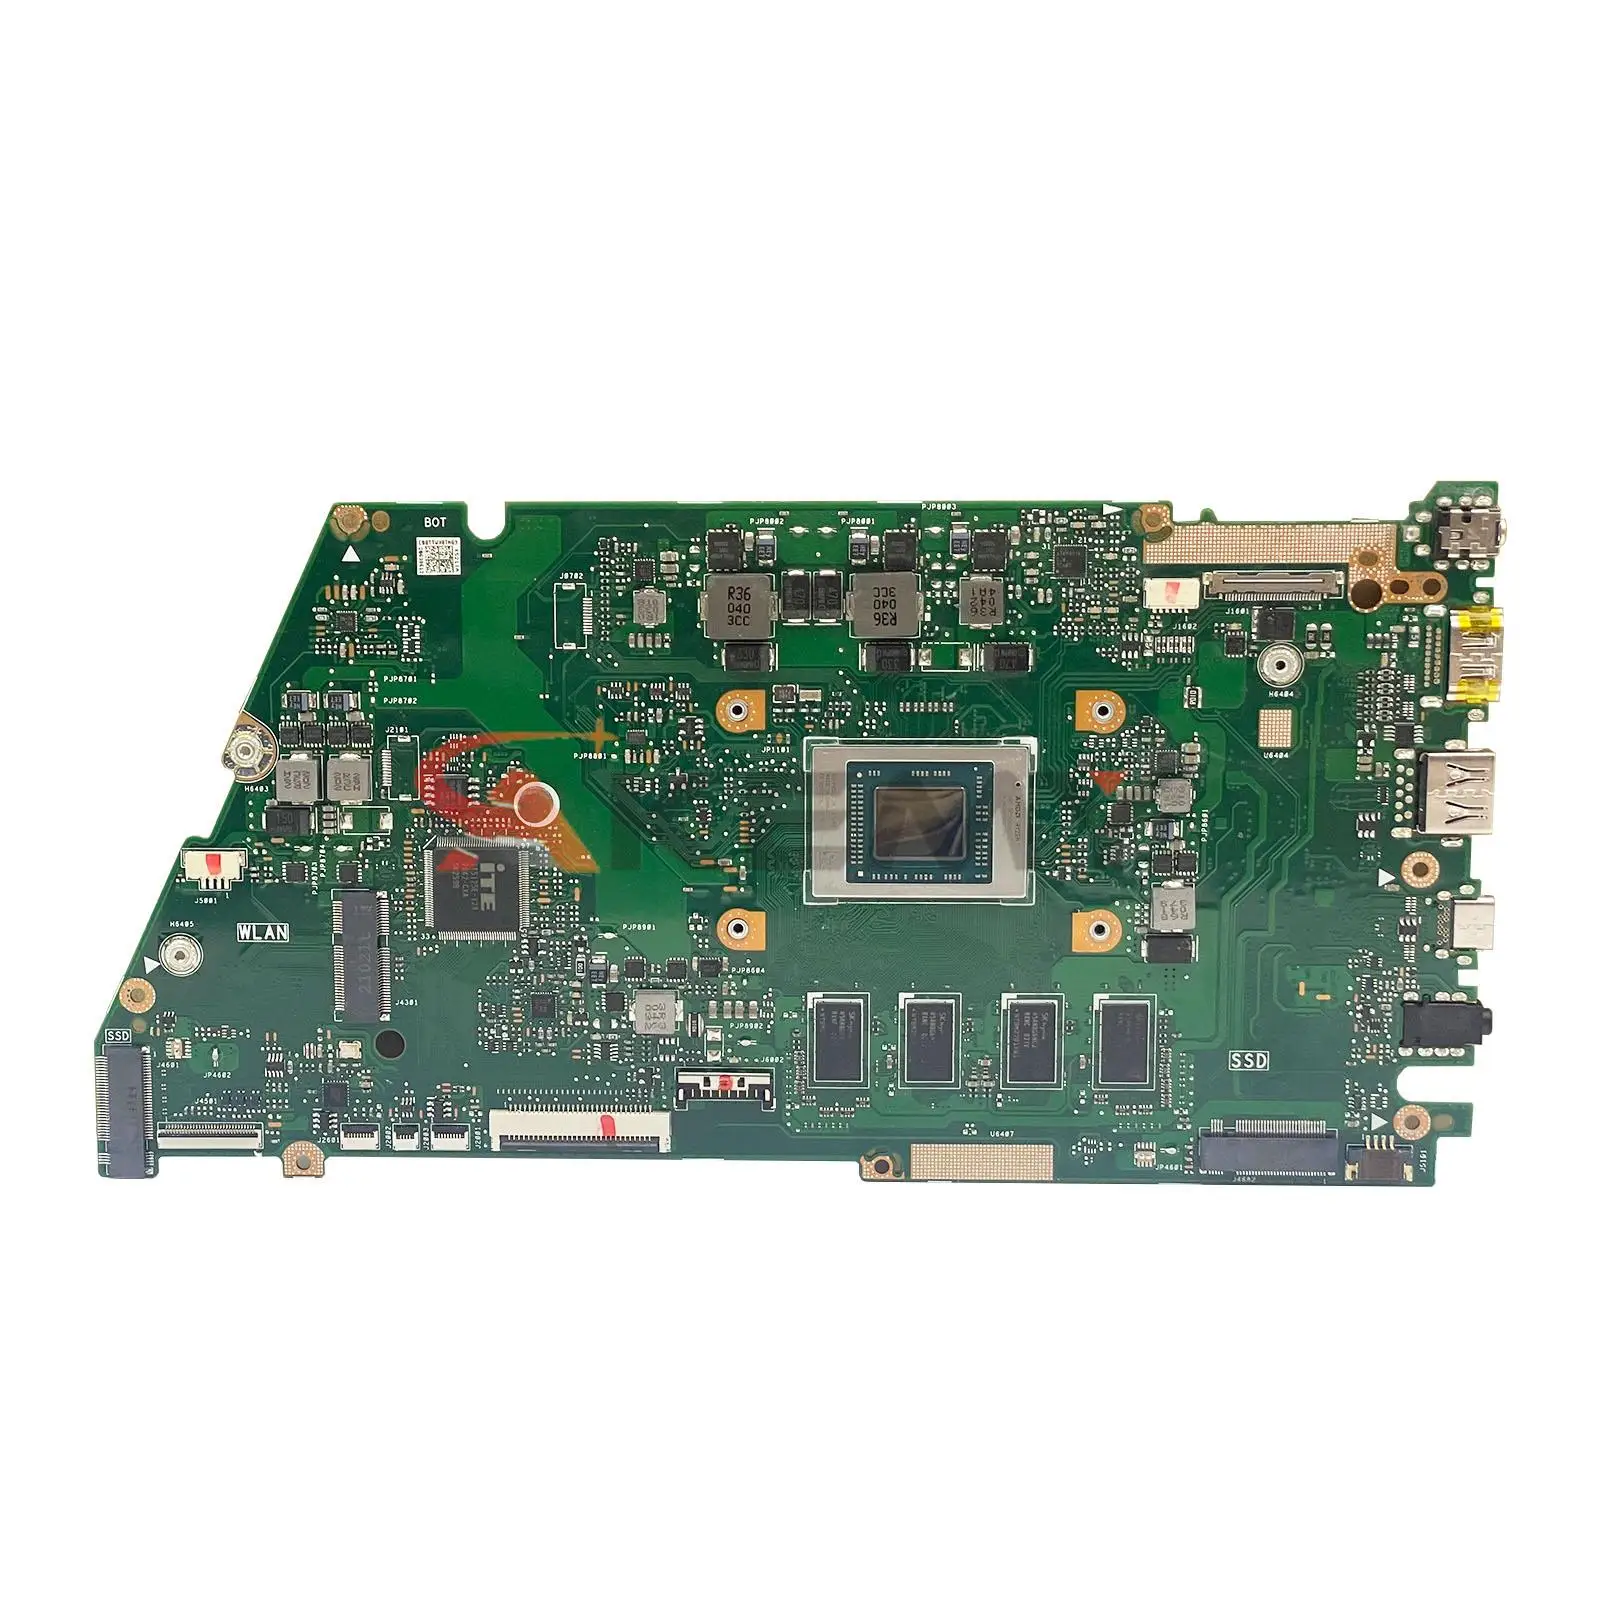 Материнская плата X421IA Для ASUS Vivo Book X421IAY X521IA Материнская Плата Ноутбука Mainboard С процессором AMD R5-4500U R7-4500U 8 ГБ 16 ГБ оперативной памяти